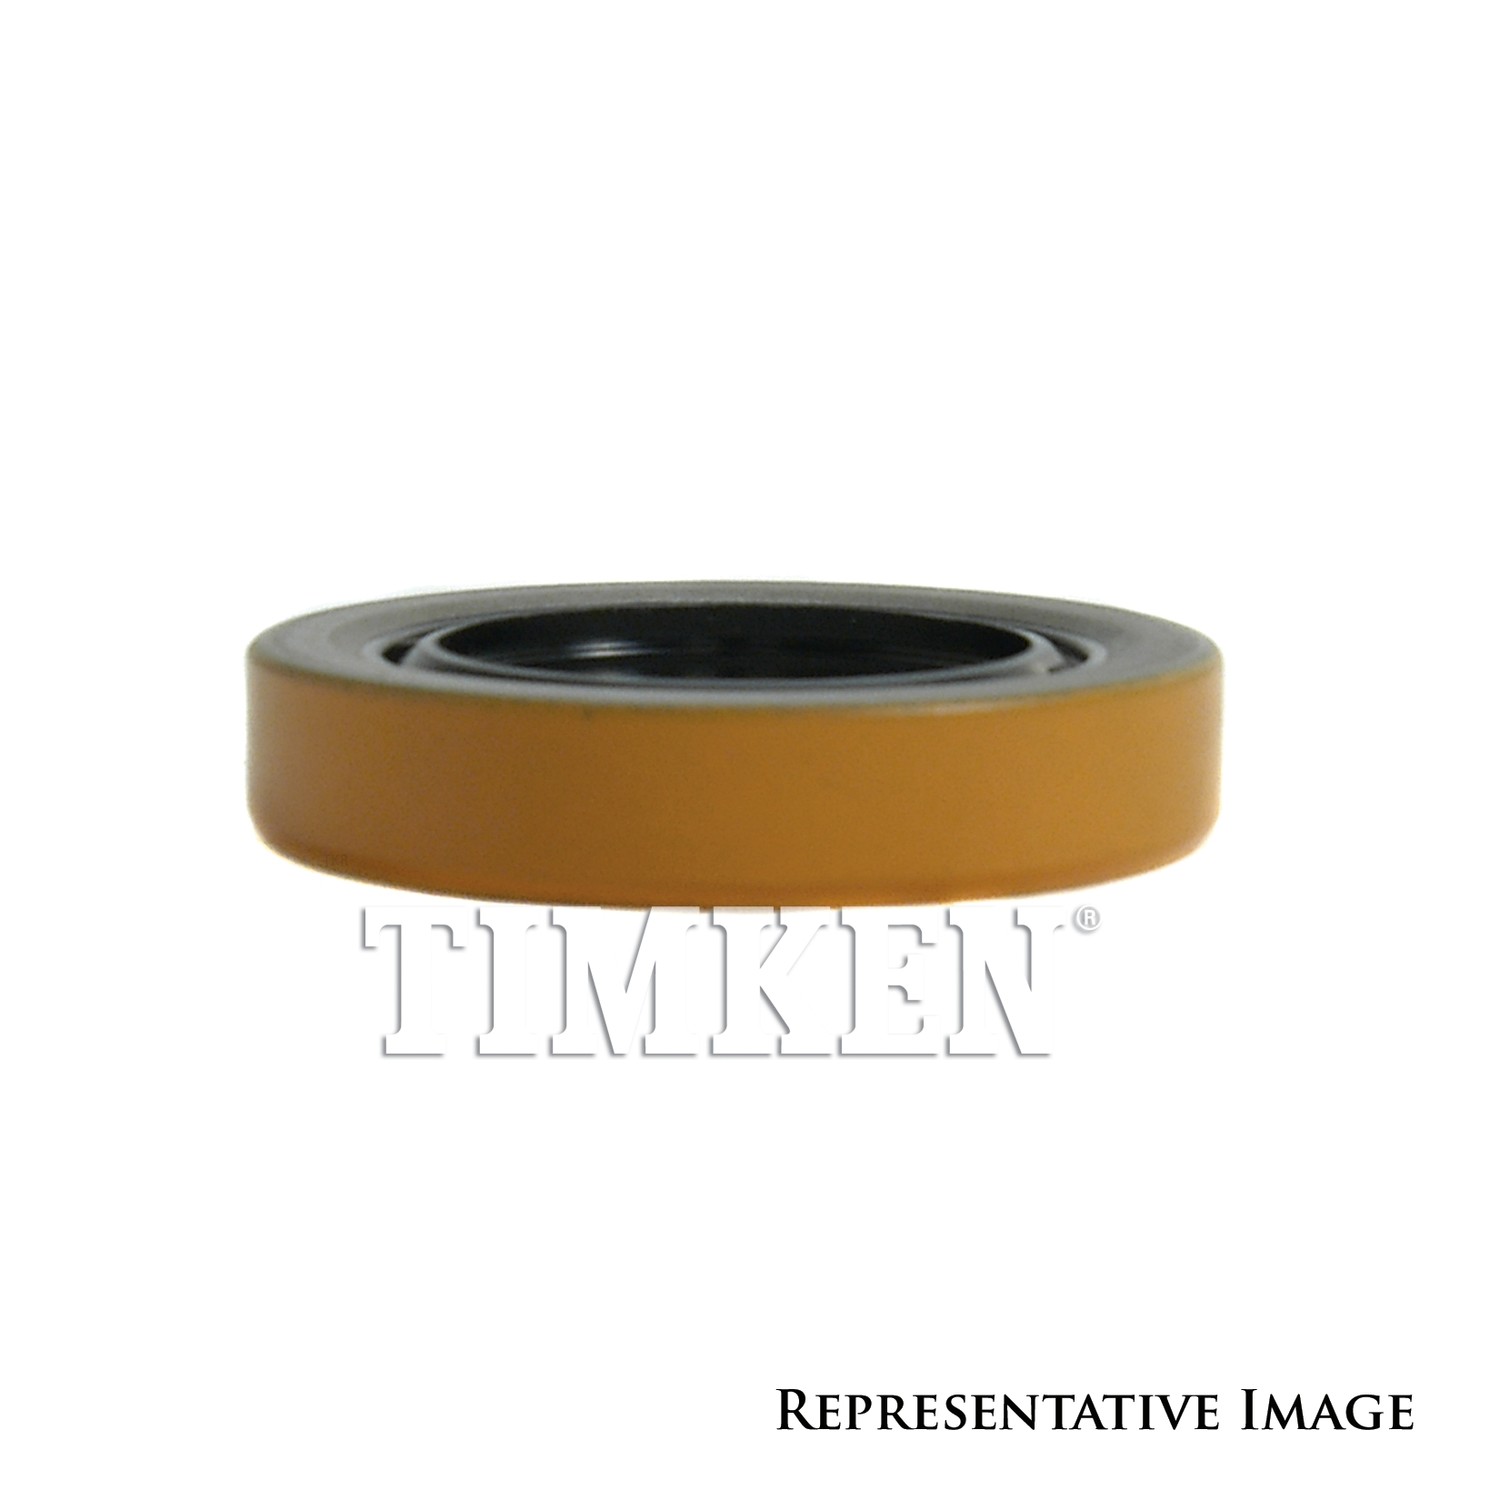 TIMKEN - Transfer Case Input Shaft Seal - TIM 3173